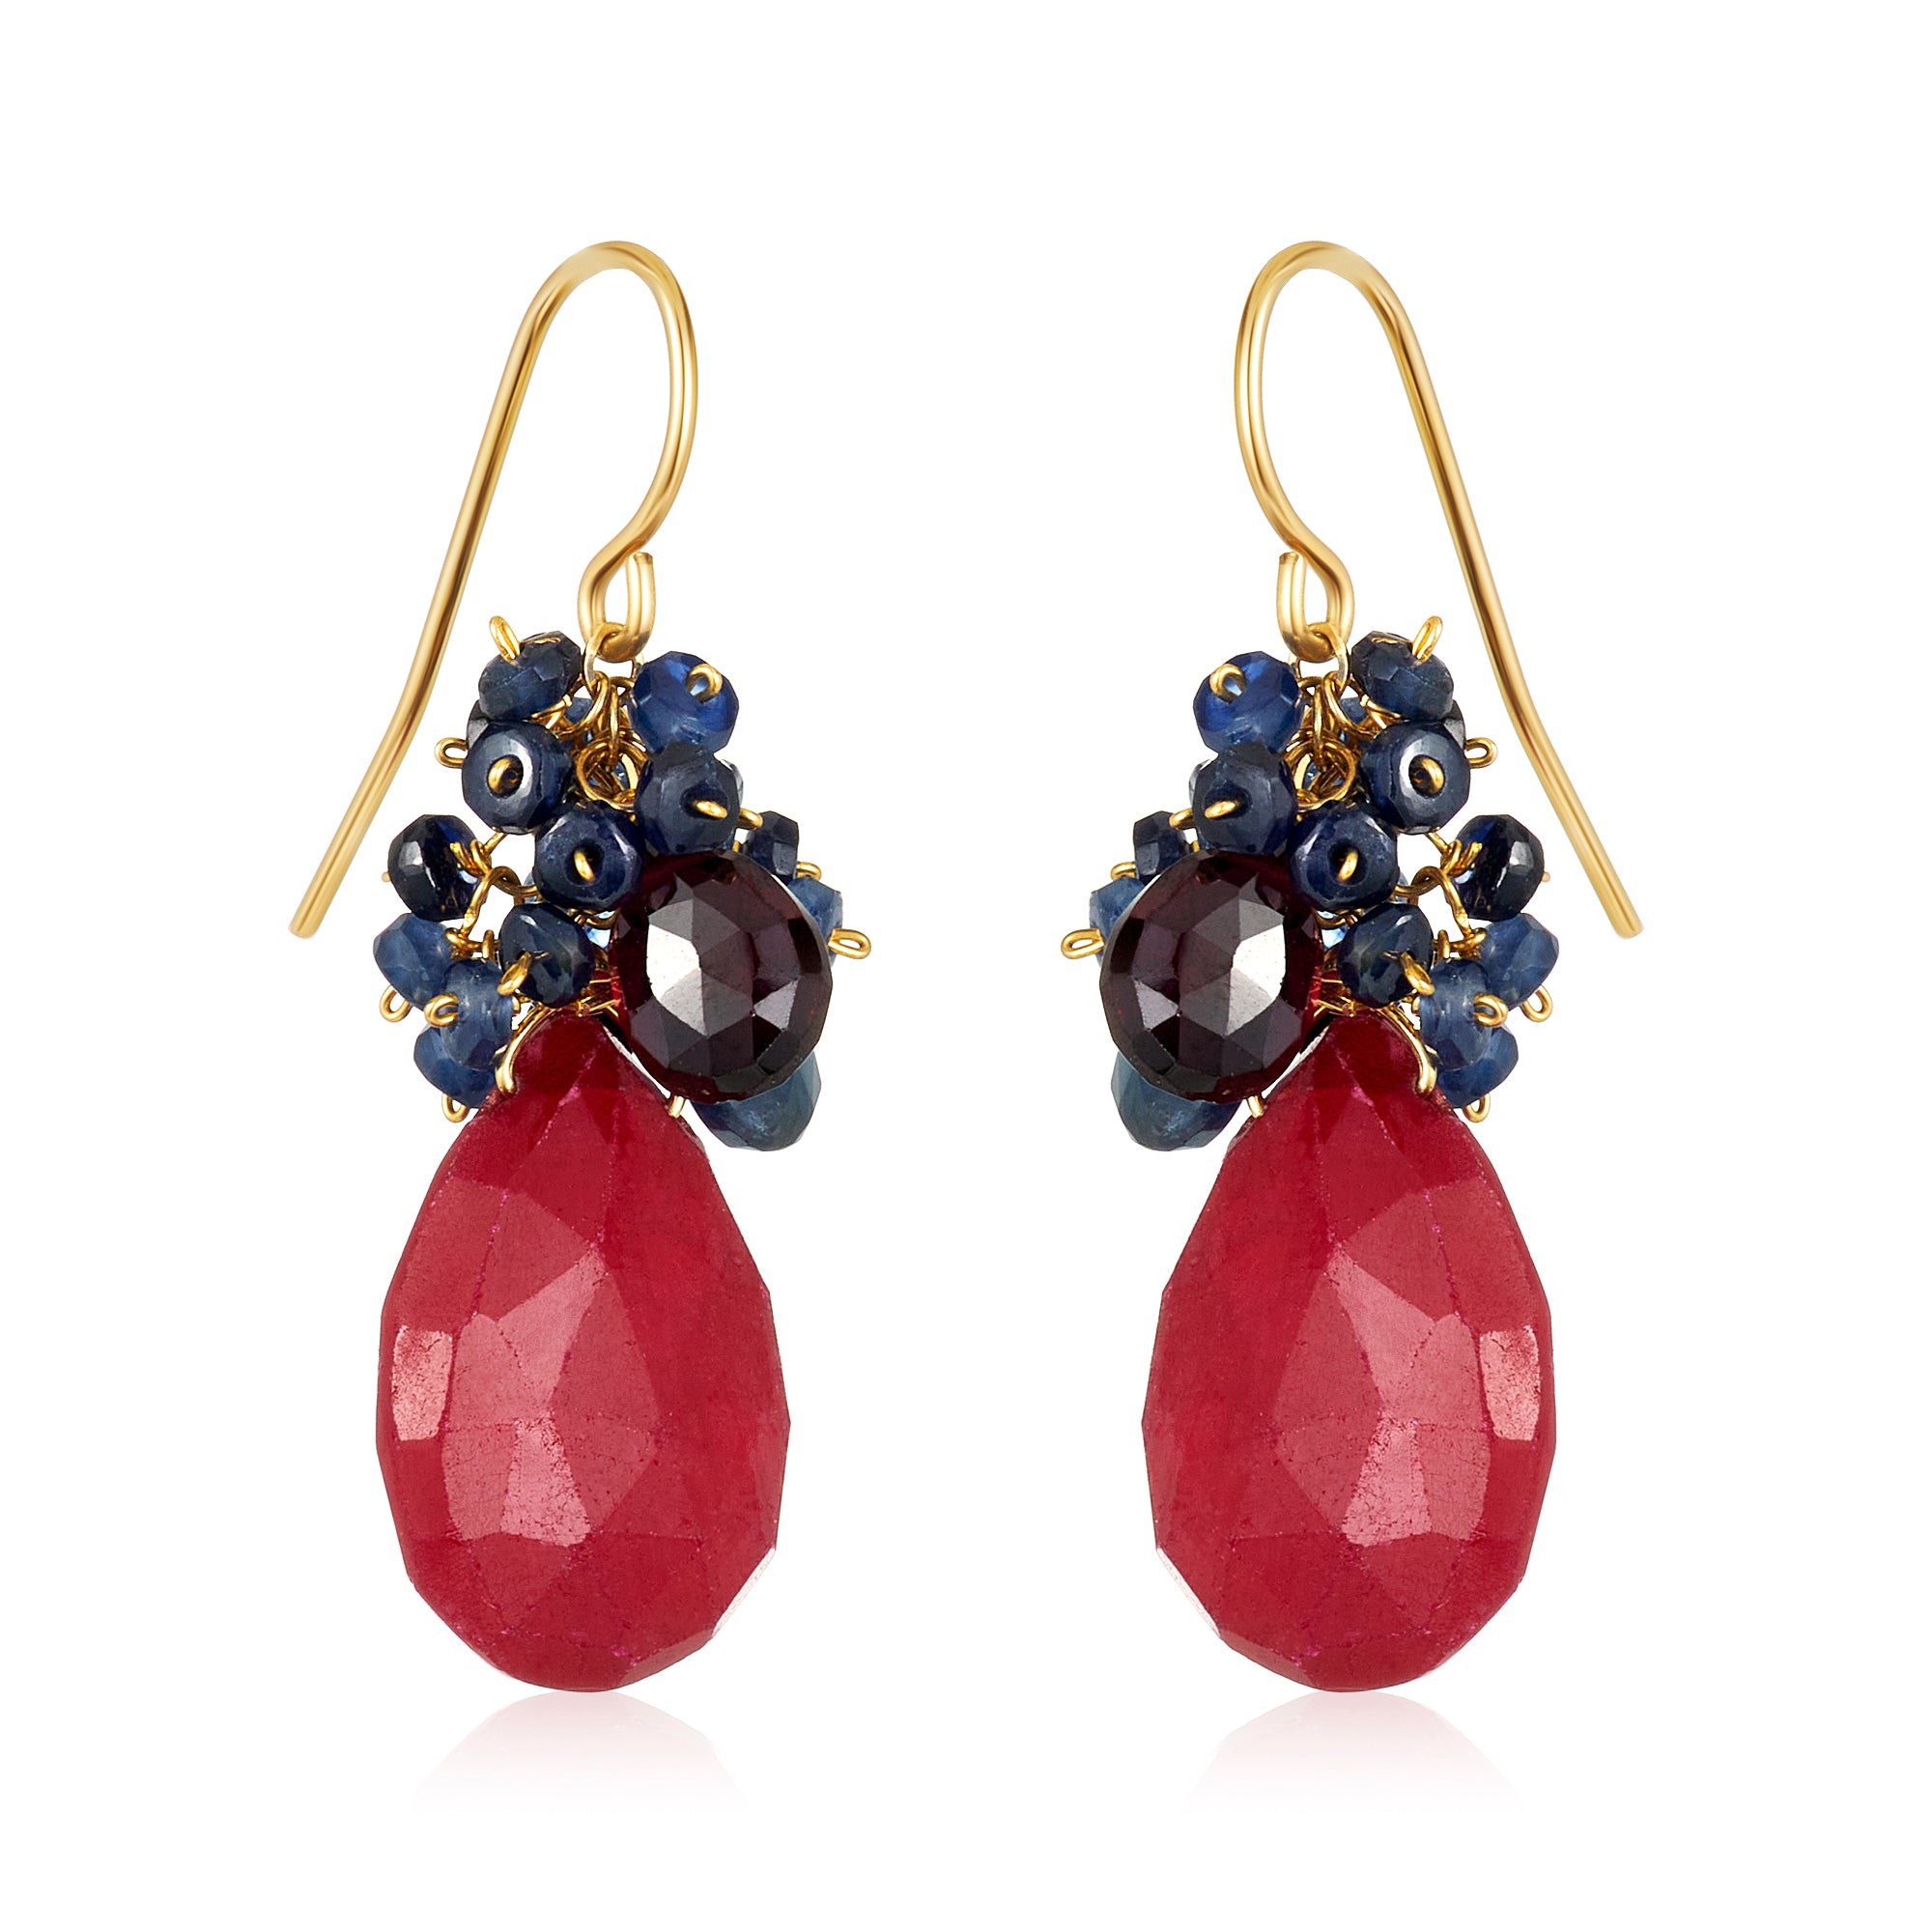 Ruby Red Earrings